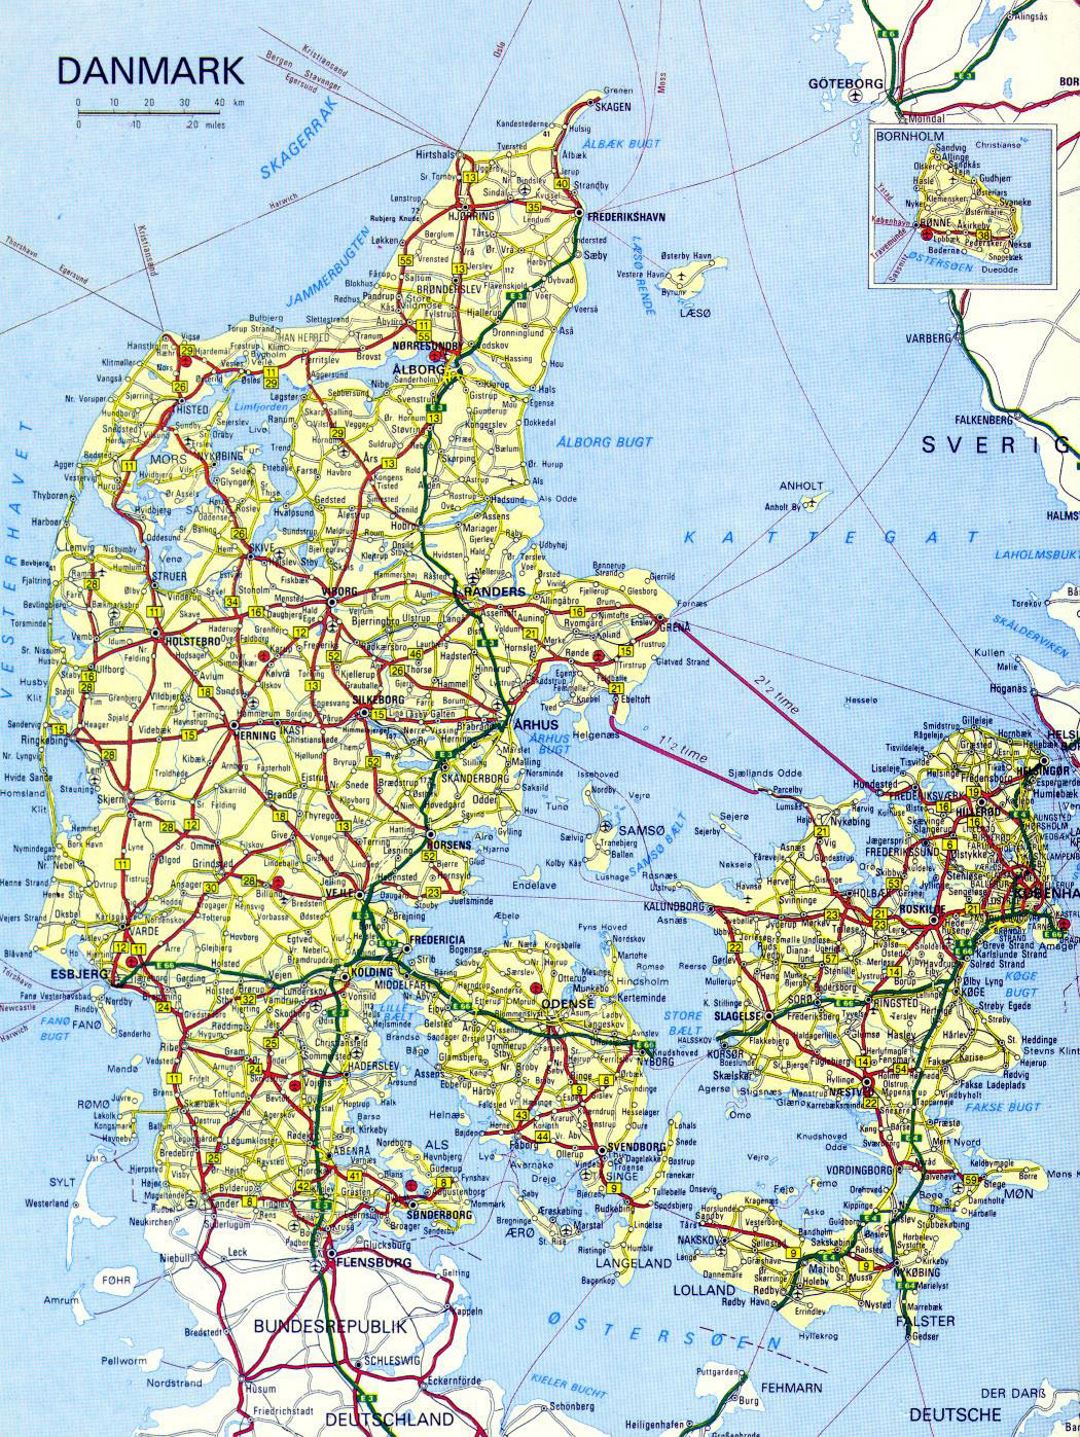 Hoja de ruta detallada de Dinamarca con las ciudades y aeropuertos